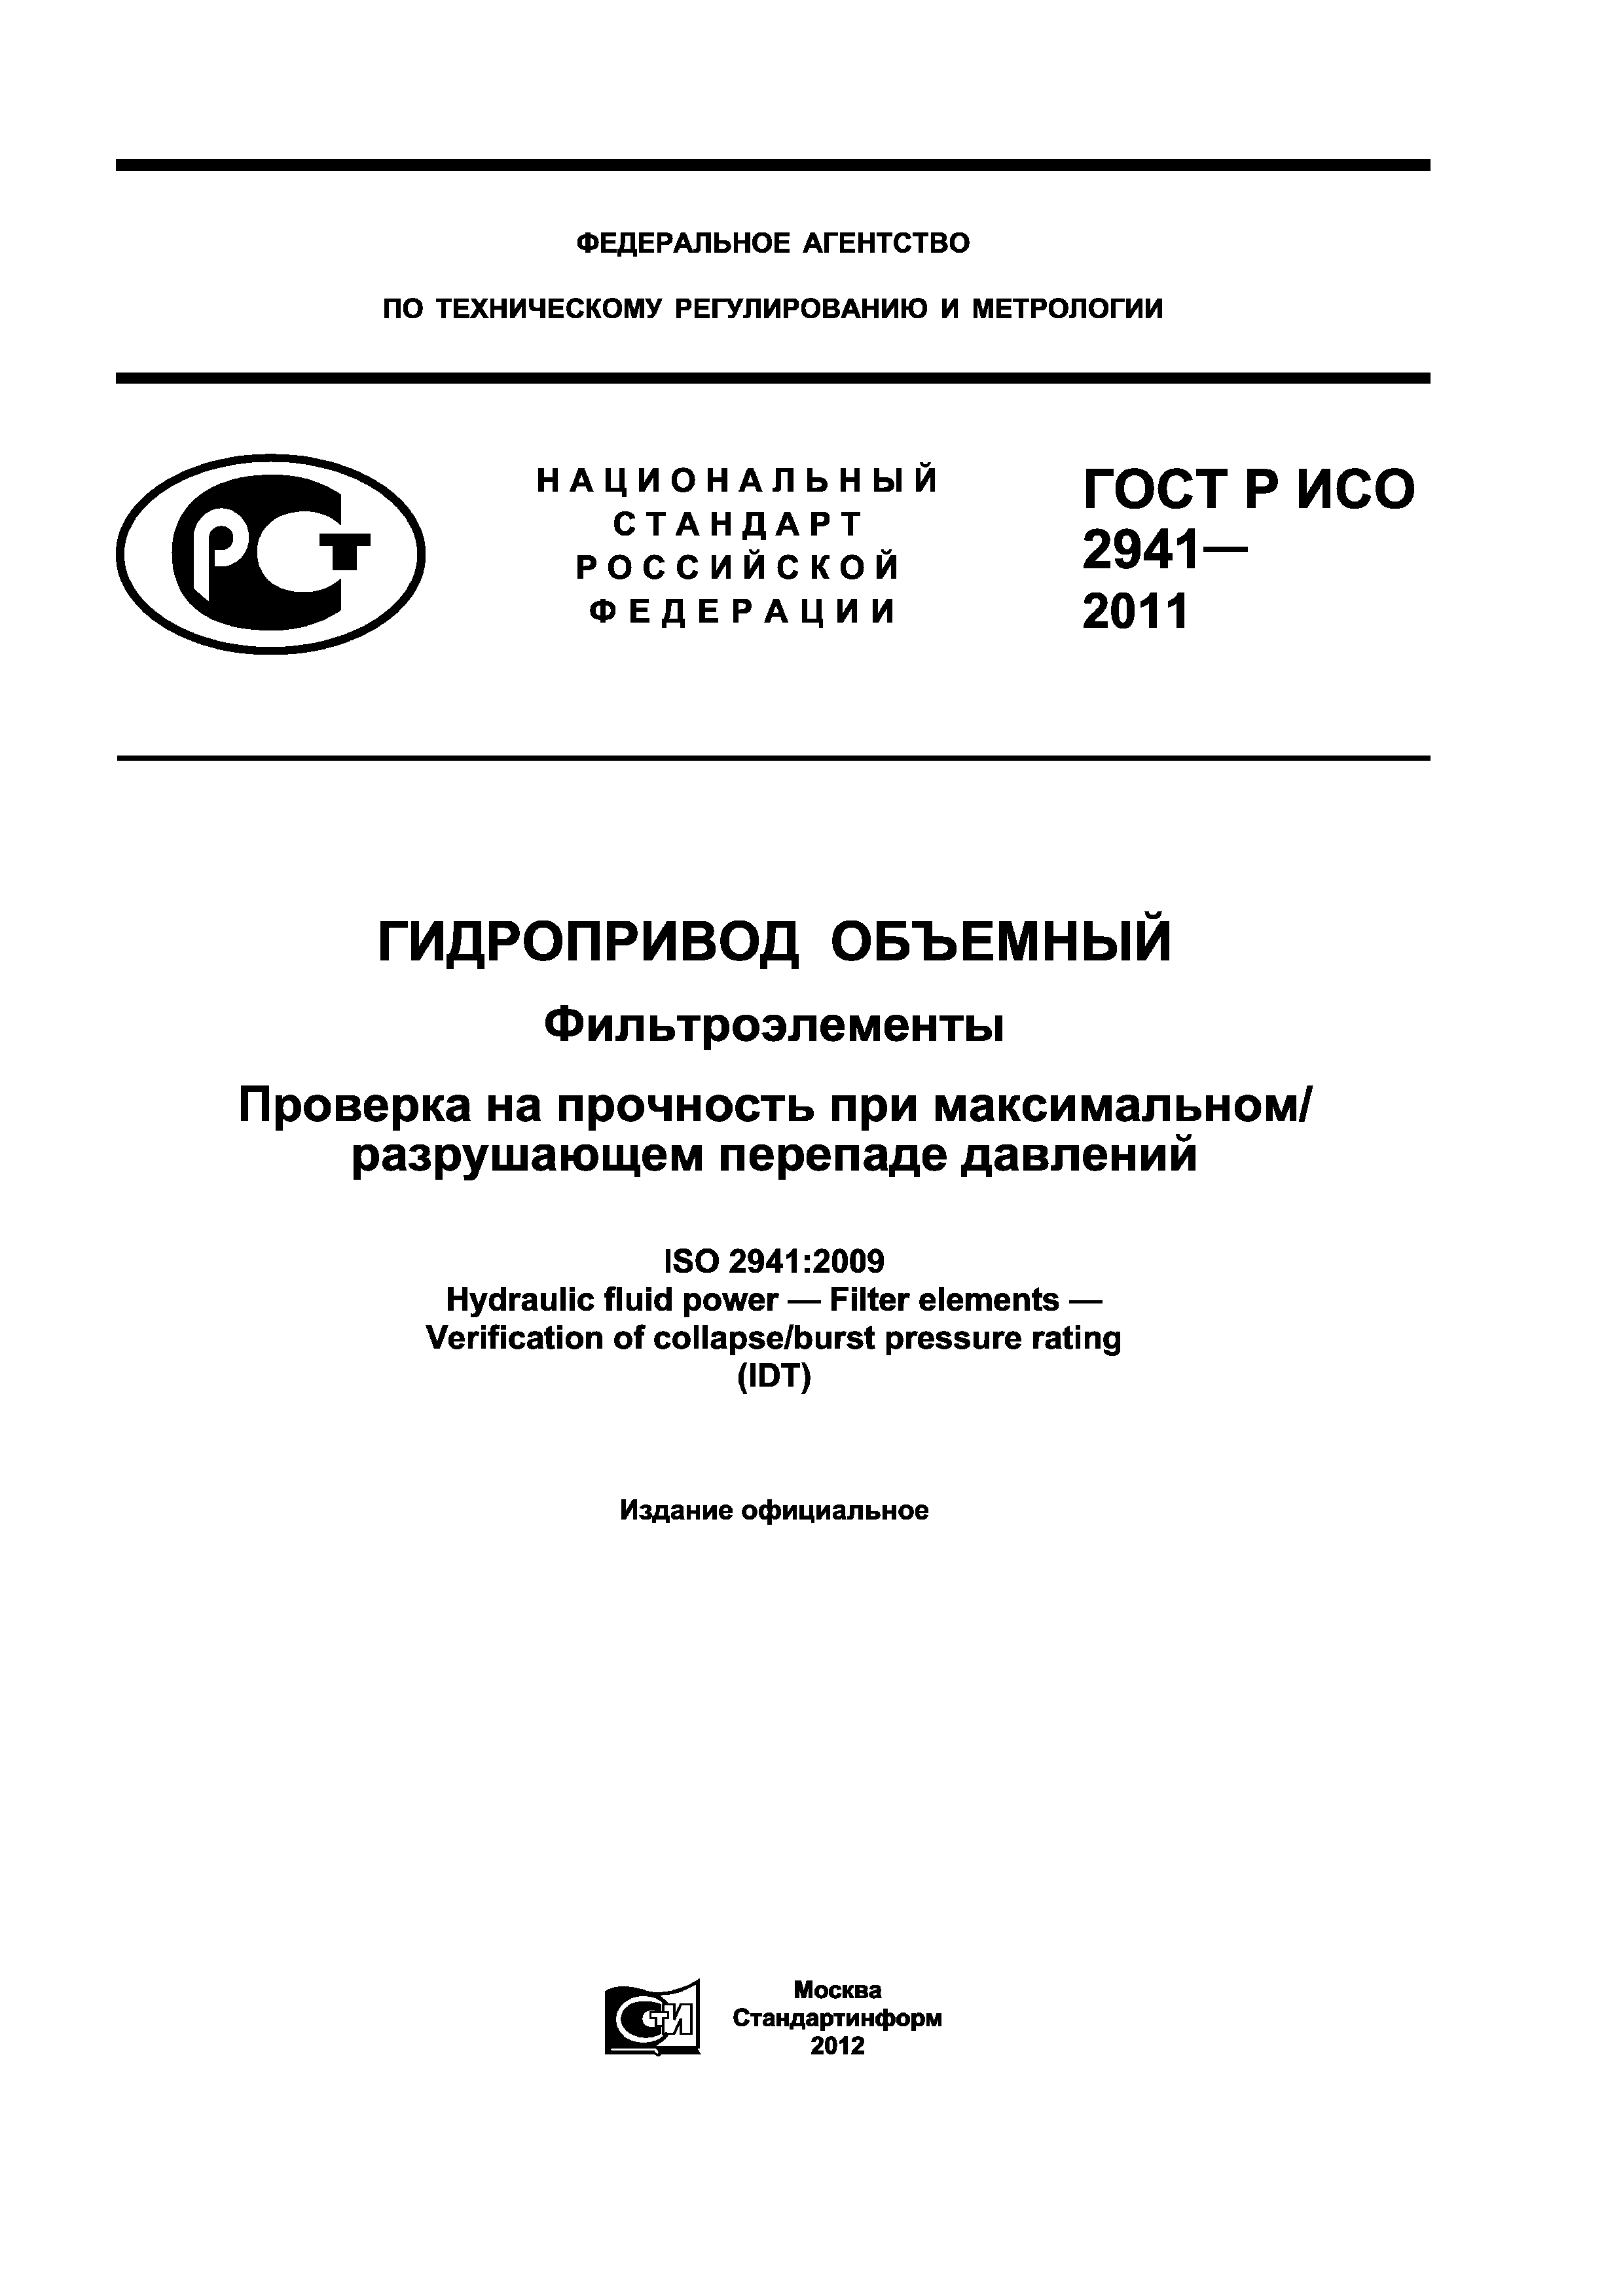 ГОСТ Р ИСО 2941-2011